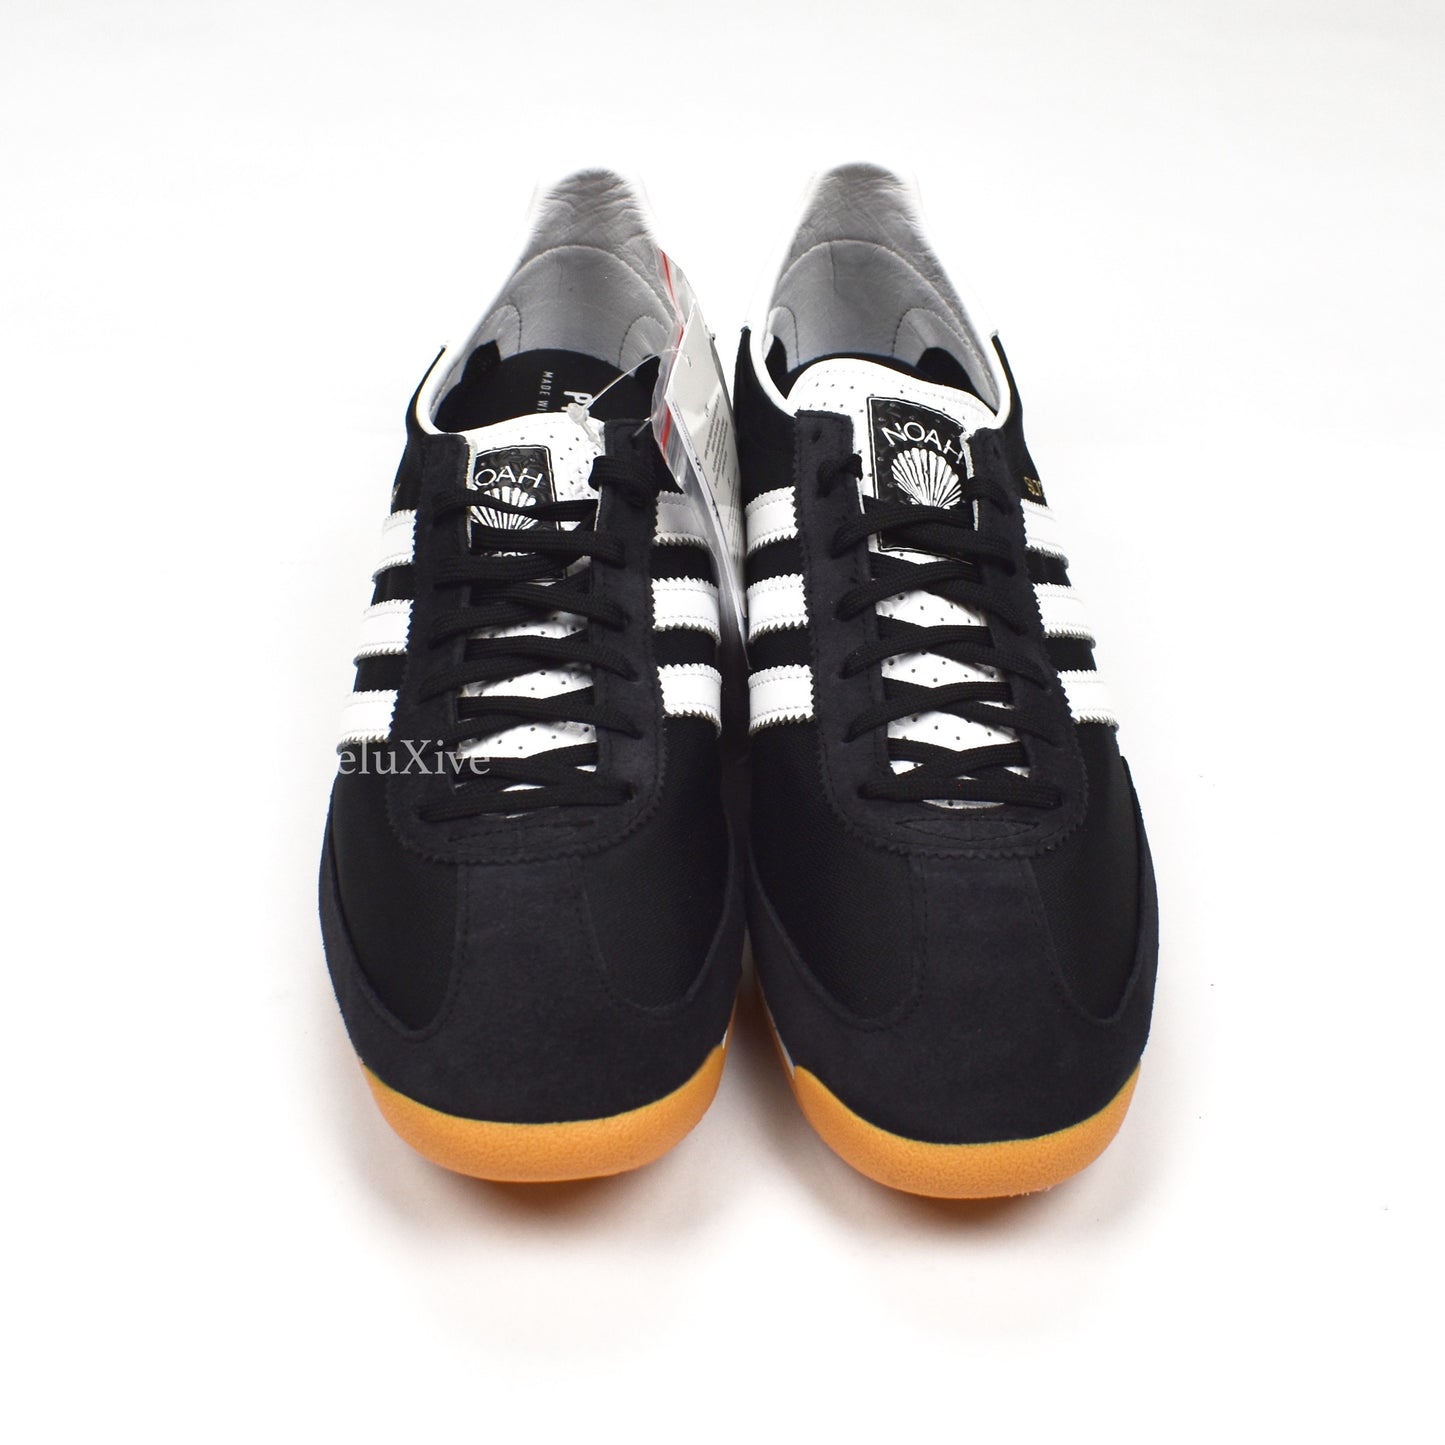 Noah x Adidas - SL72 Suede Sneakers (Black)